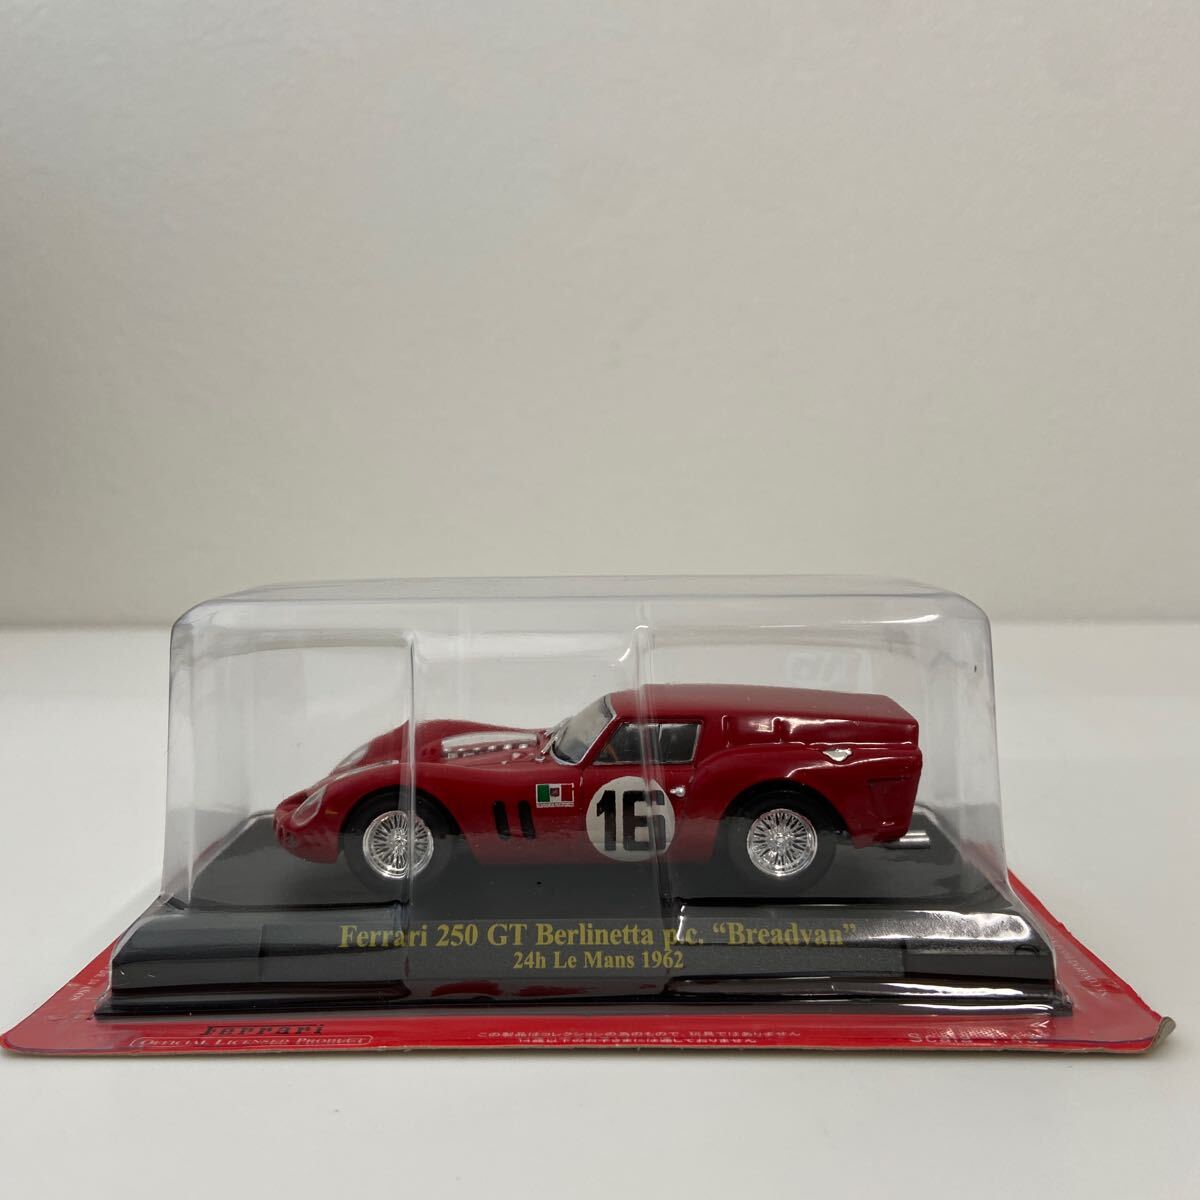 アシェット 公式フェラーリF1コレクション 1/43 Ferrari 250GT #16 ルマン24時間レース ベルリネッタ Breadvan p.c. LM ミニカー _画像2